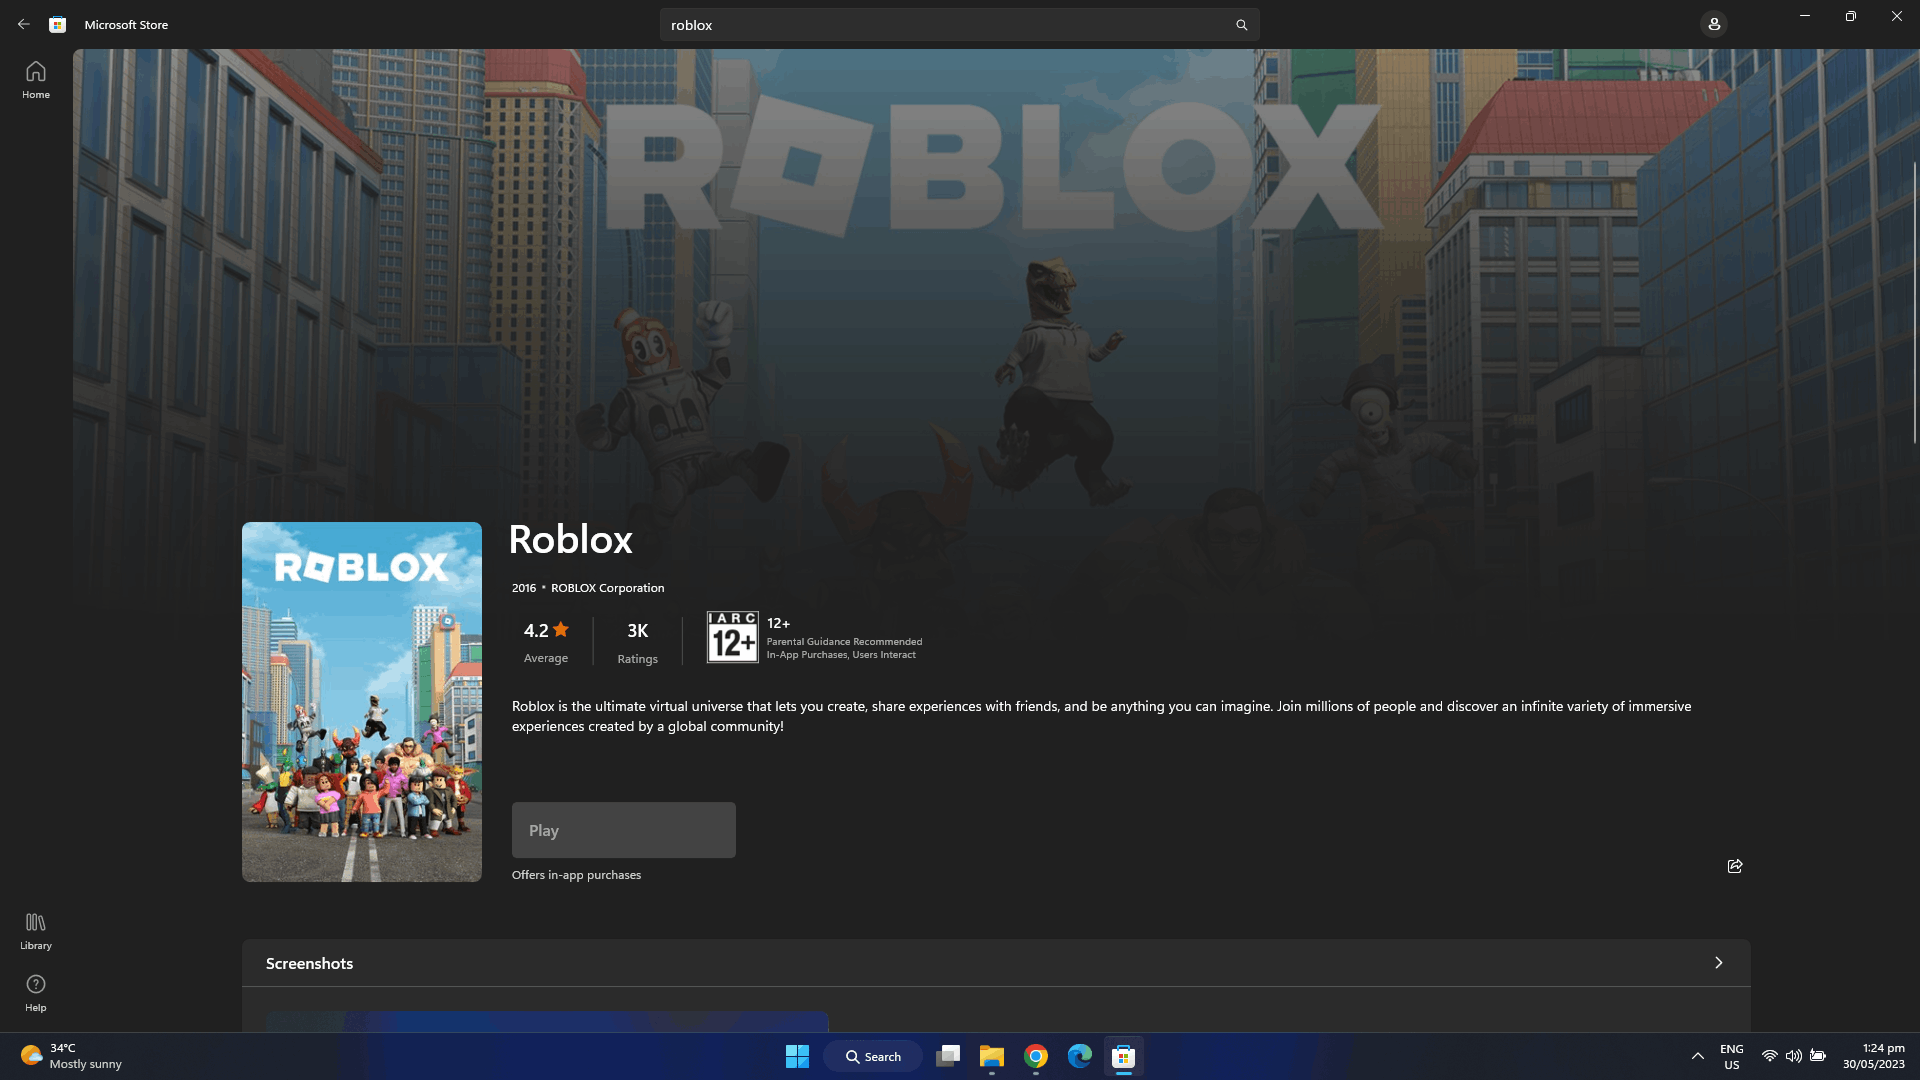 Roblox in Microsoft Store - Microsoft Community